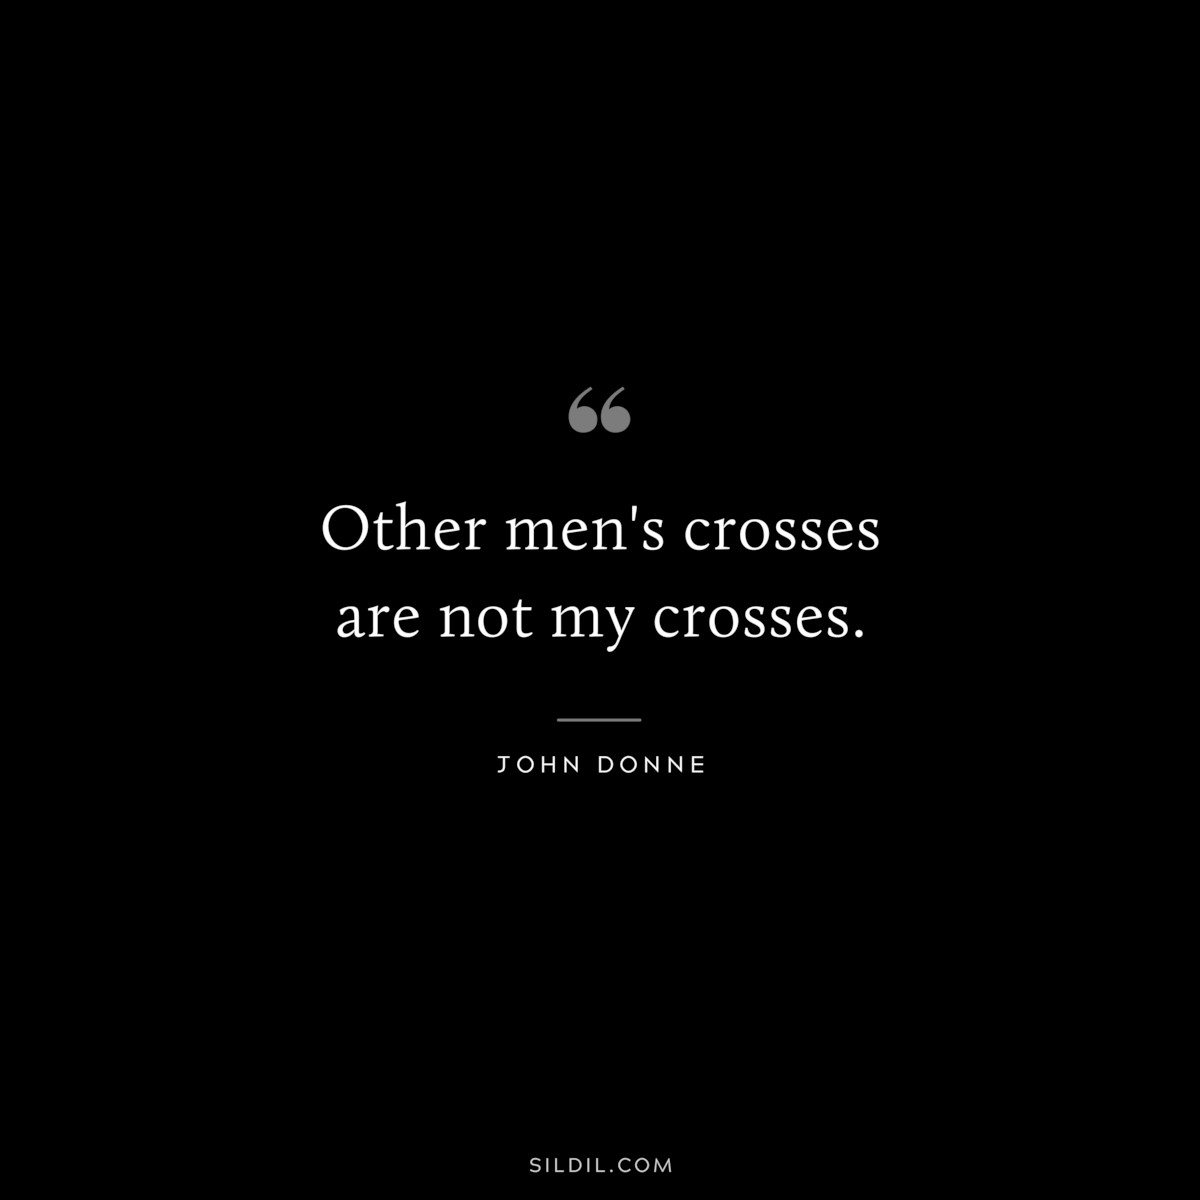 Other men's crosses are not my crosses. ― John Donne